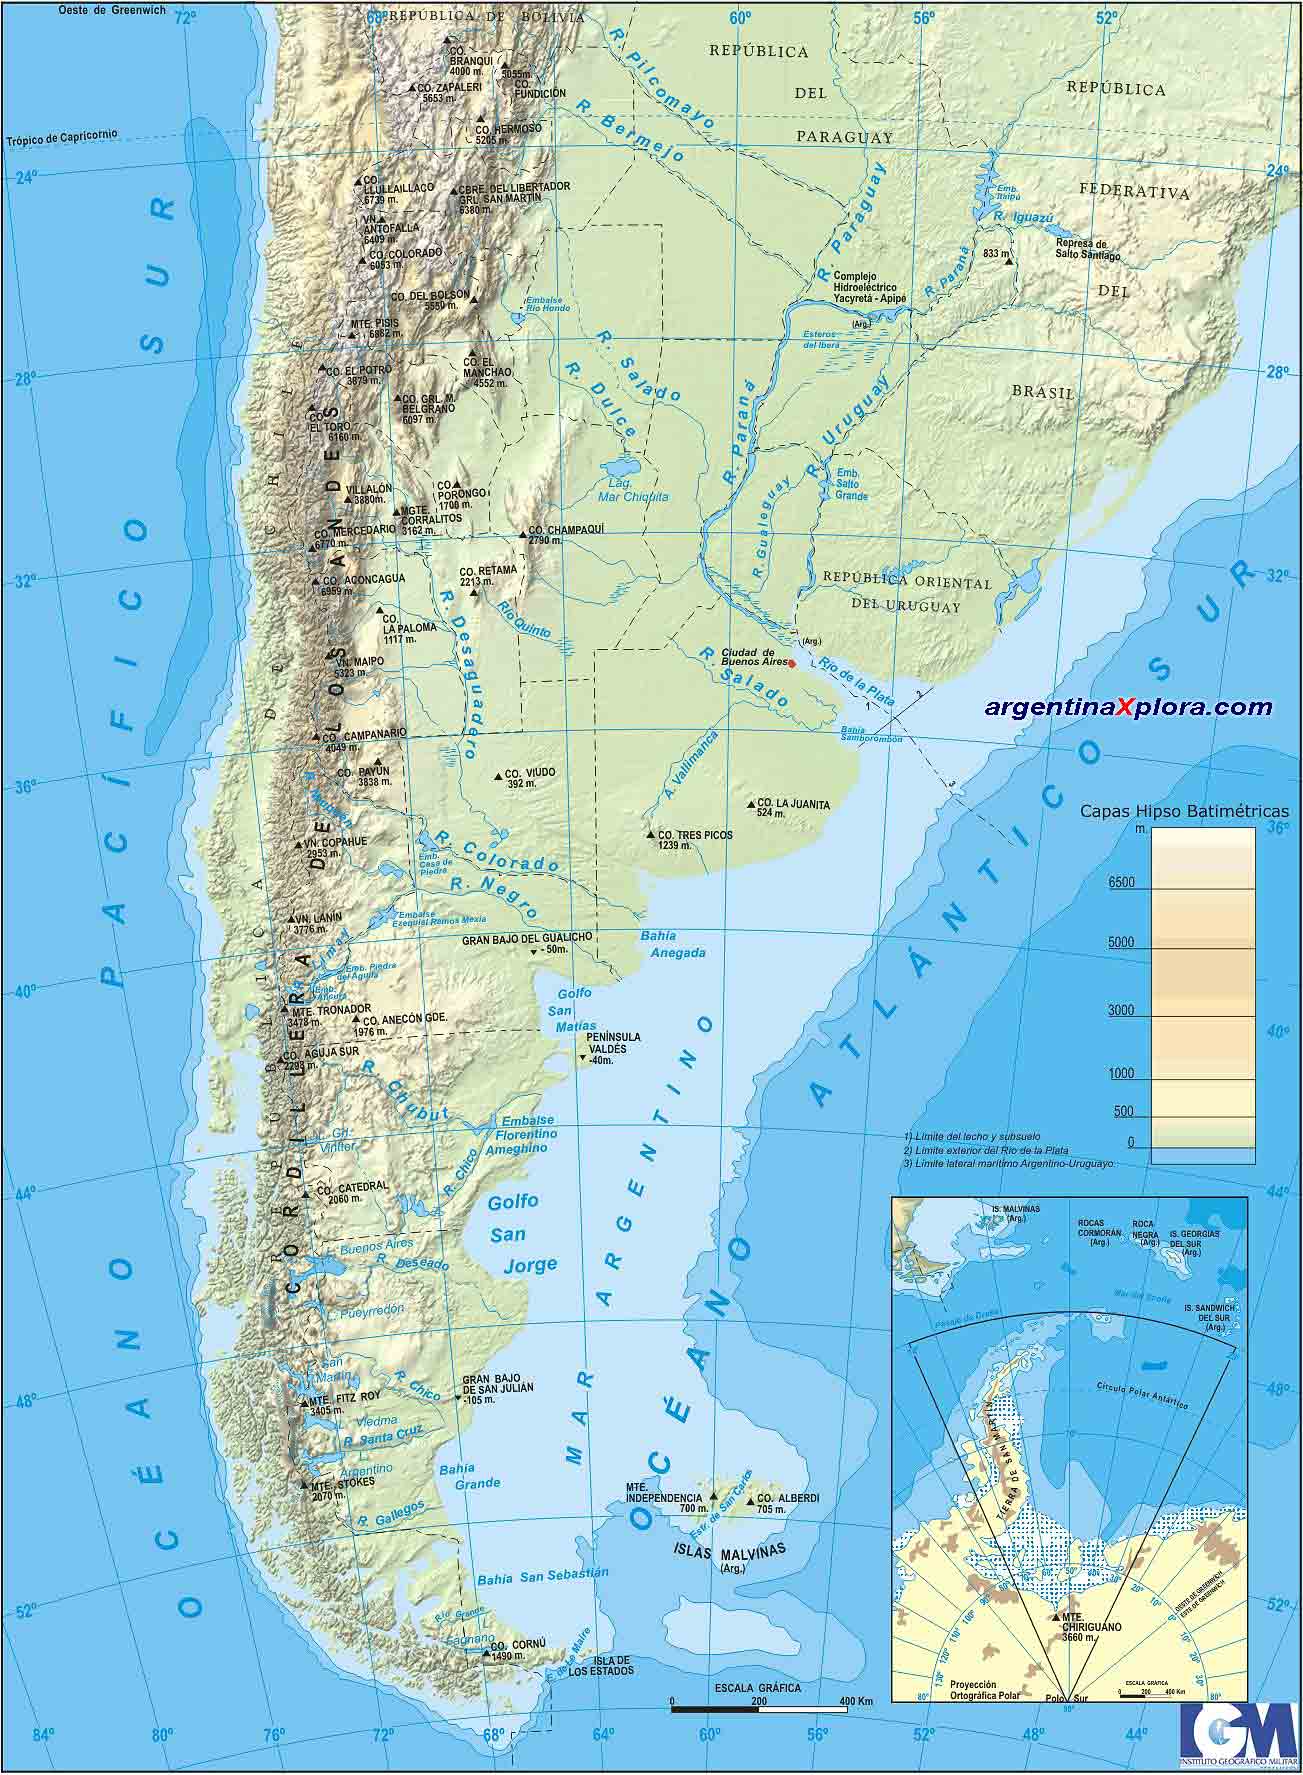 Mapa Fisico de Argentina - Aspecto Fisico accidentes geográficos y relieve de Argentina, todas las provincias y límites